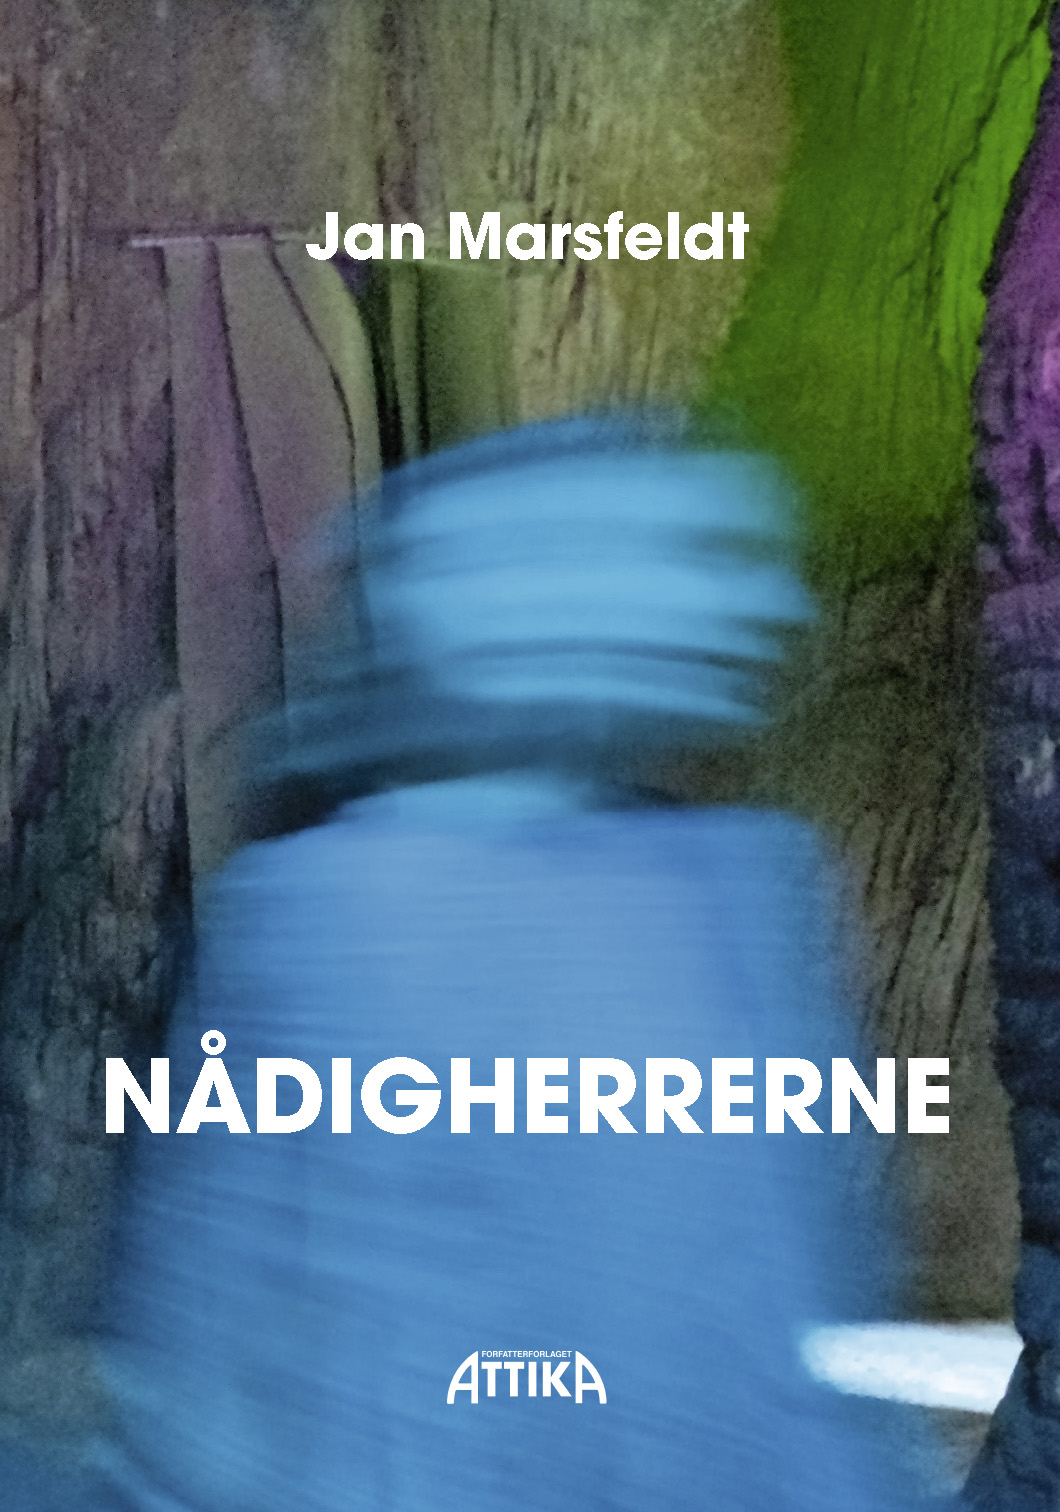 Jan Marsfeldt: Nådigherrerne